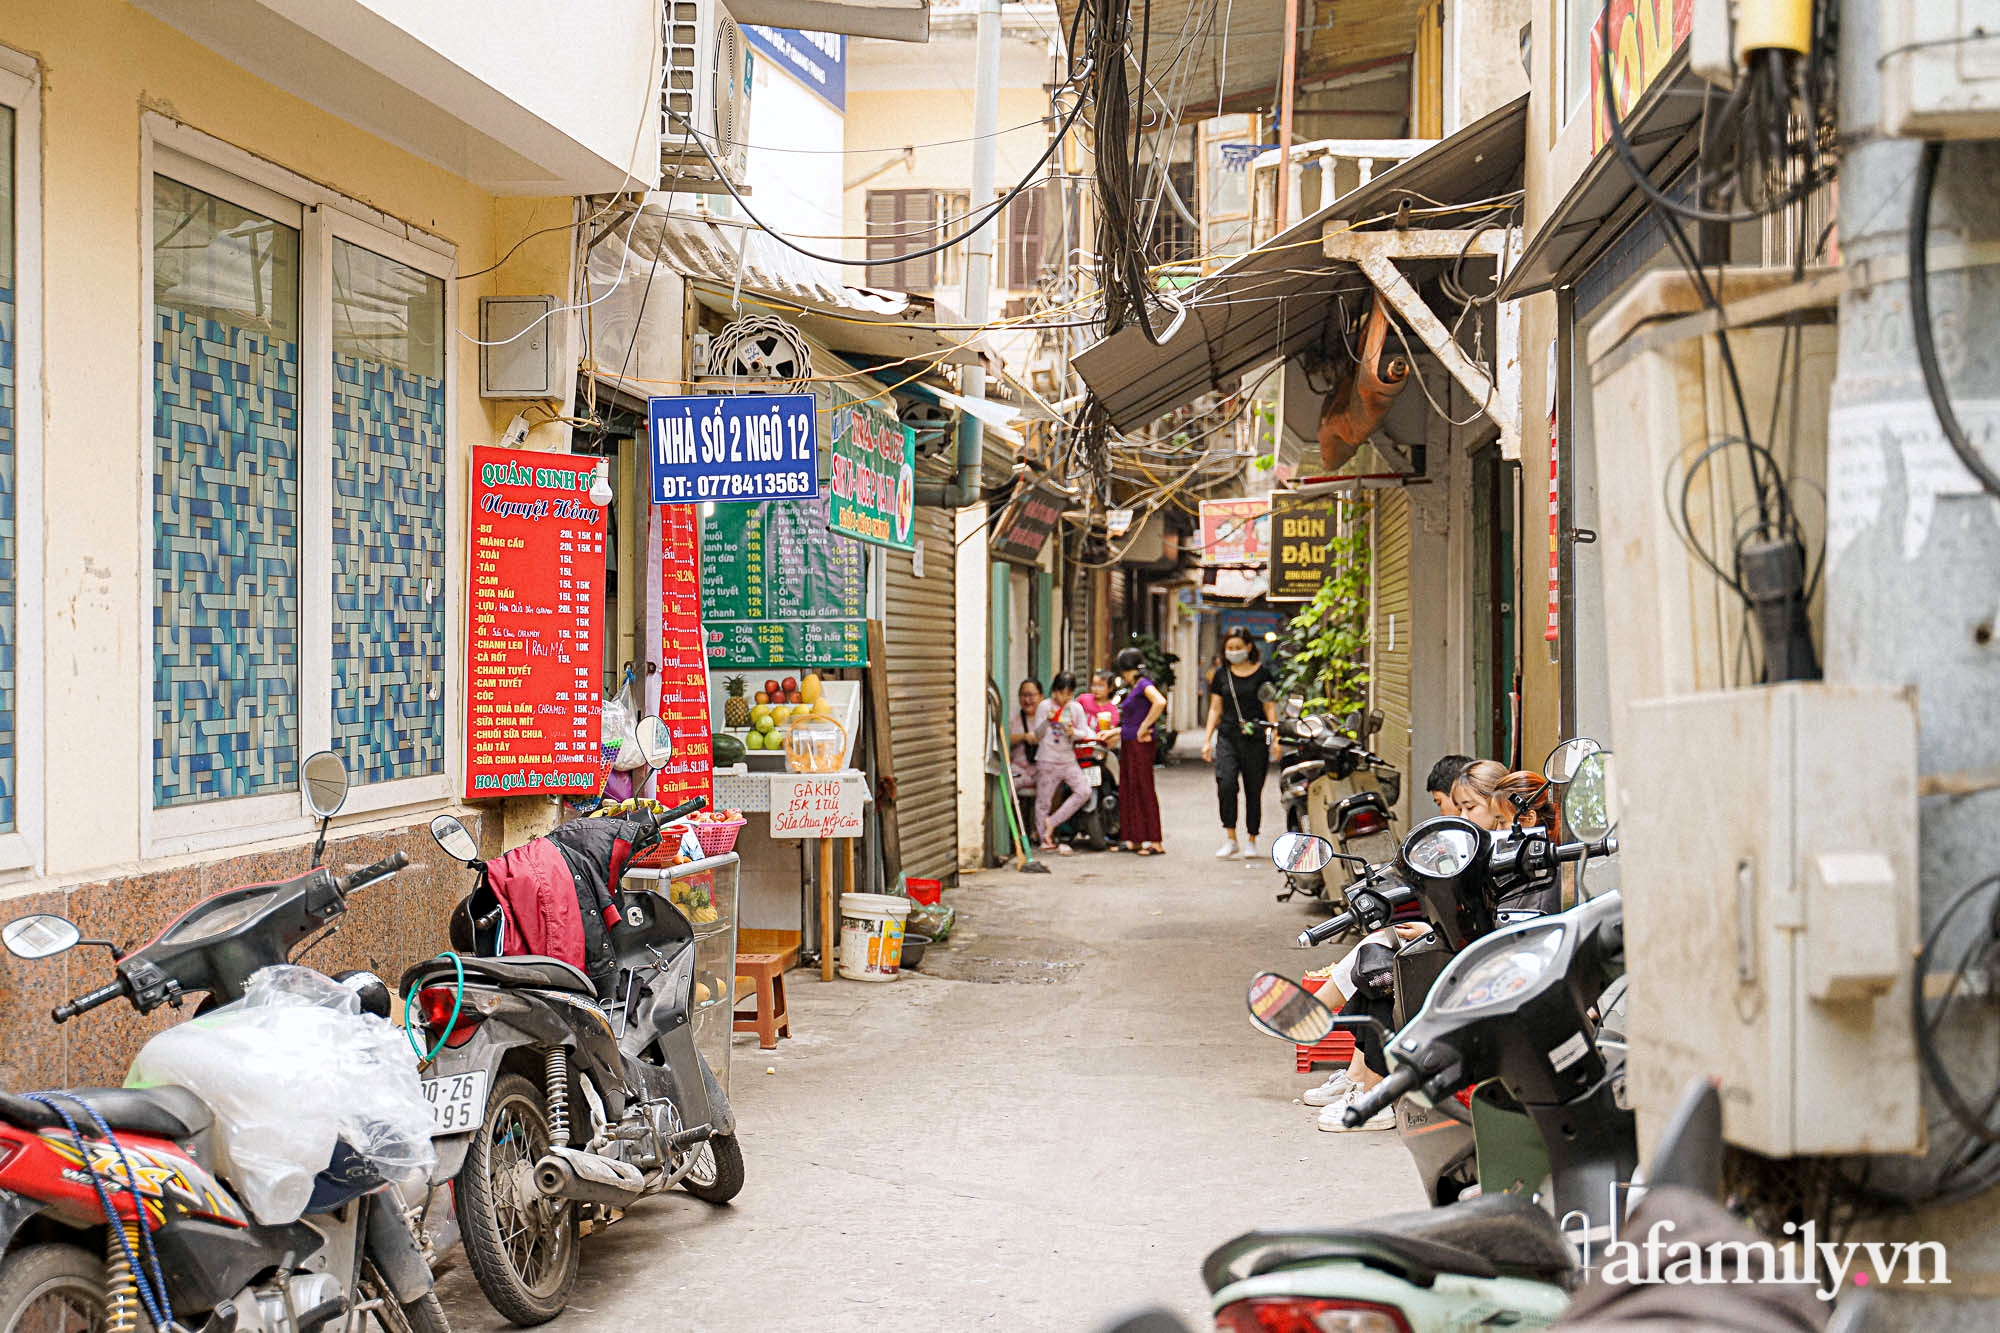 Nắng nóng mới bắt đầu, tiệm nước ép hoa quả chỉ 3m2 trong con ngõ bé xíu ở Hà Nội thu lời cả chục triệu nhờ bán 700 cốc mỗi ngày - Ảnh 1.